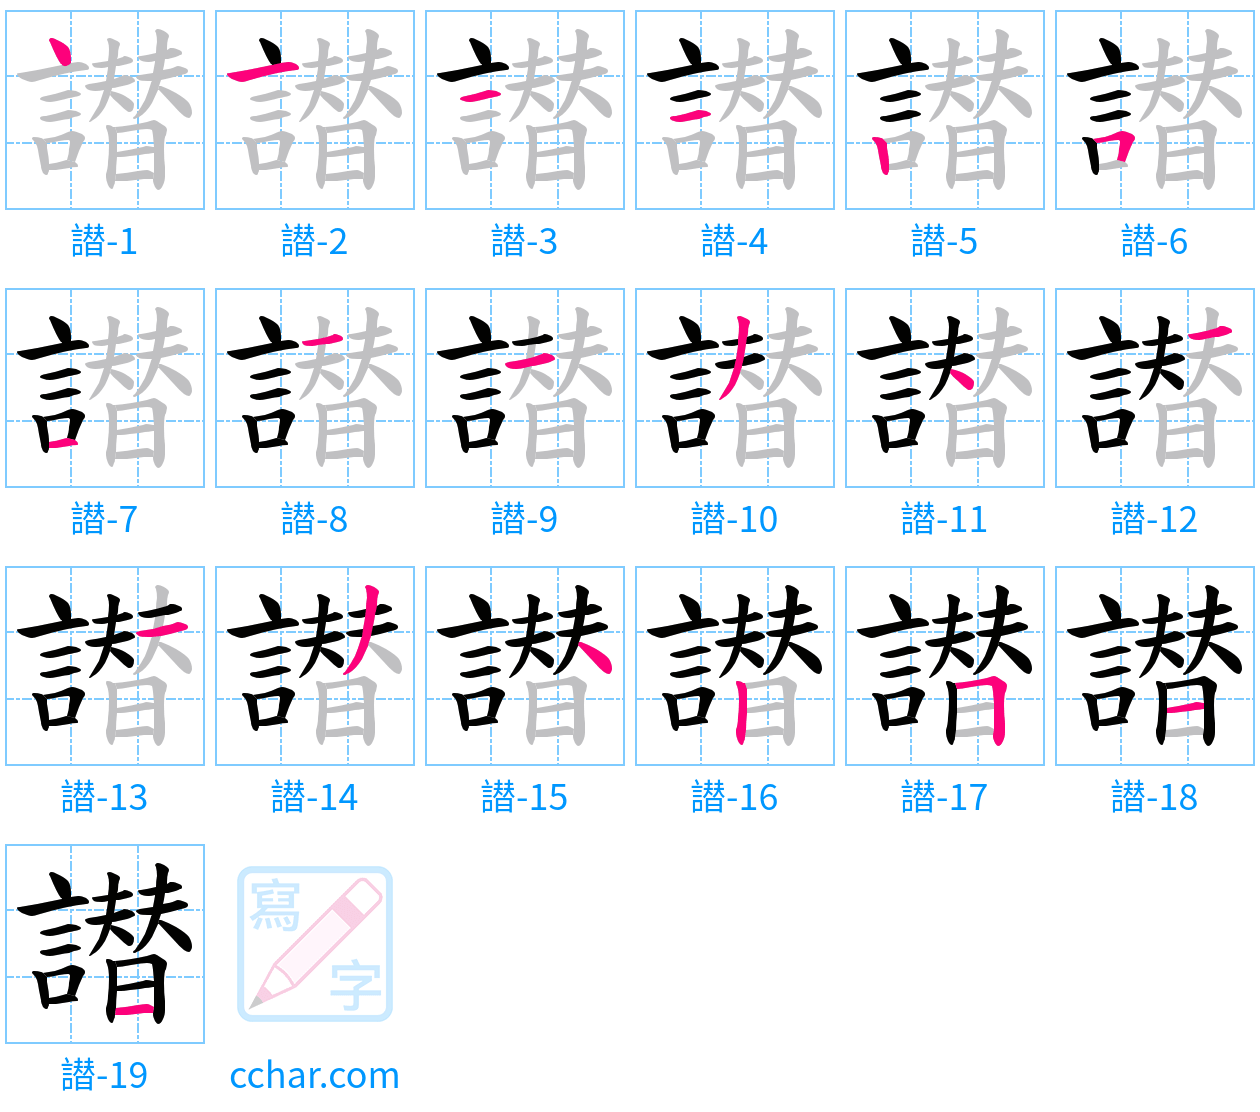 譛 stroke order step-by-step diagram